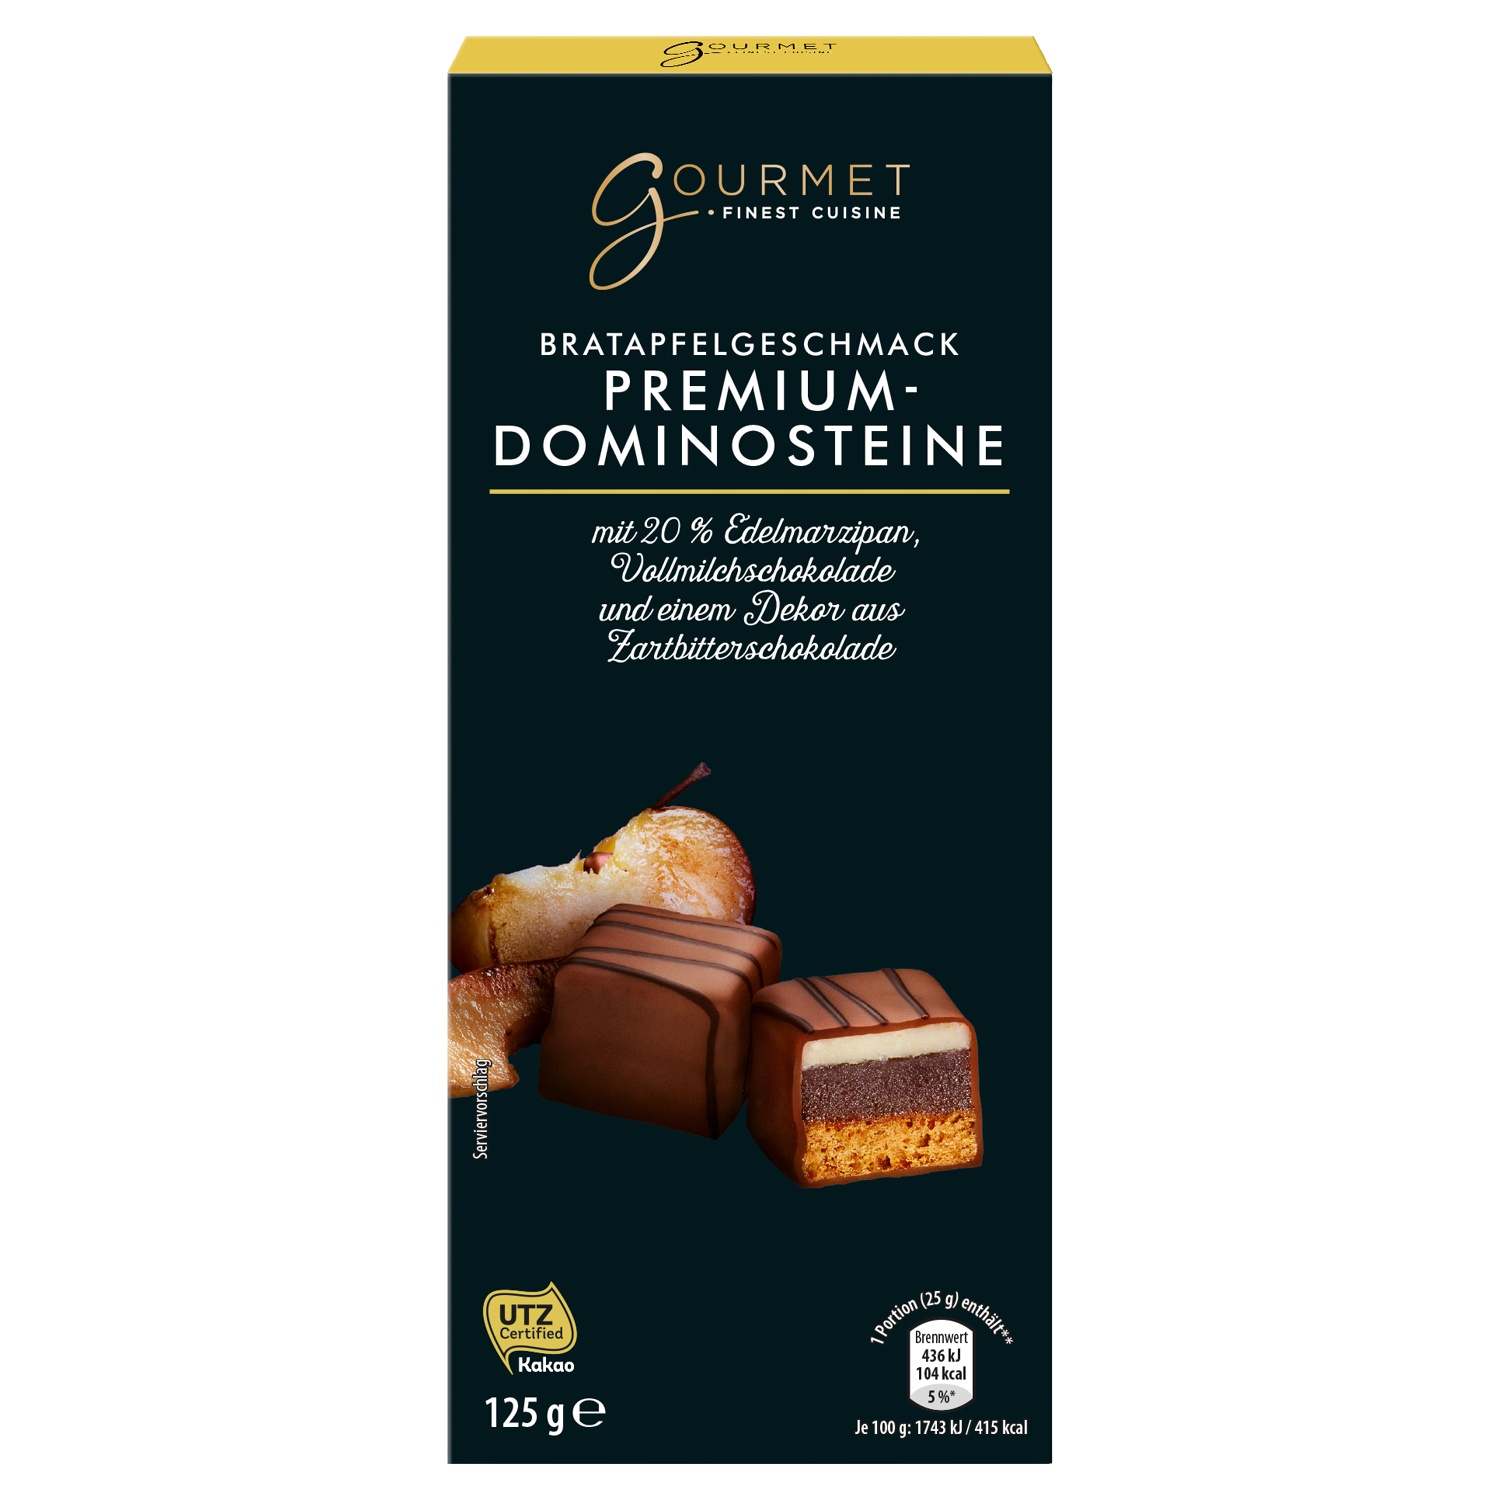 GOURMET Premium-Dominosteine 125 g